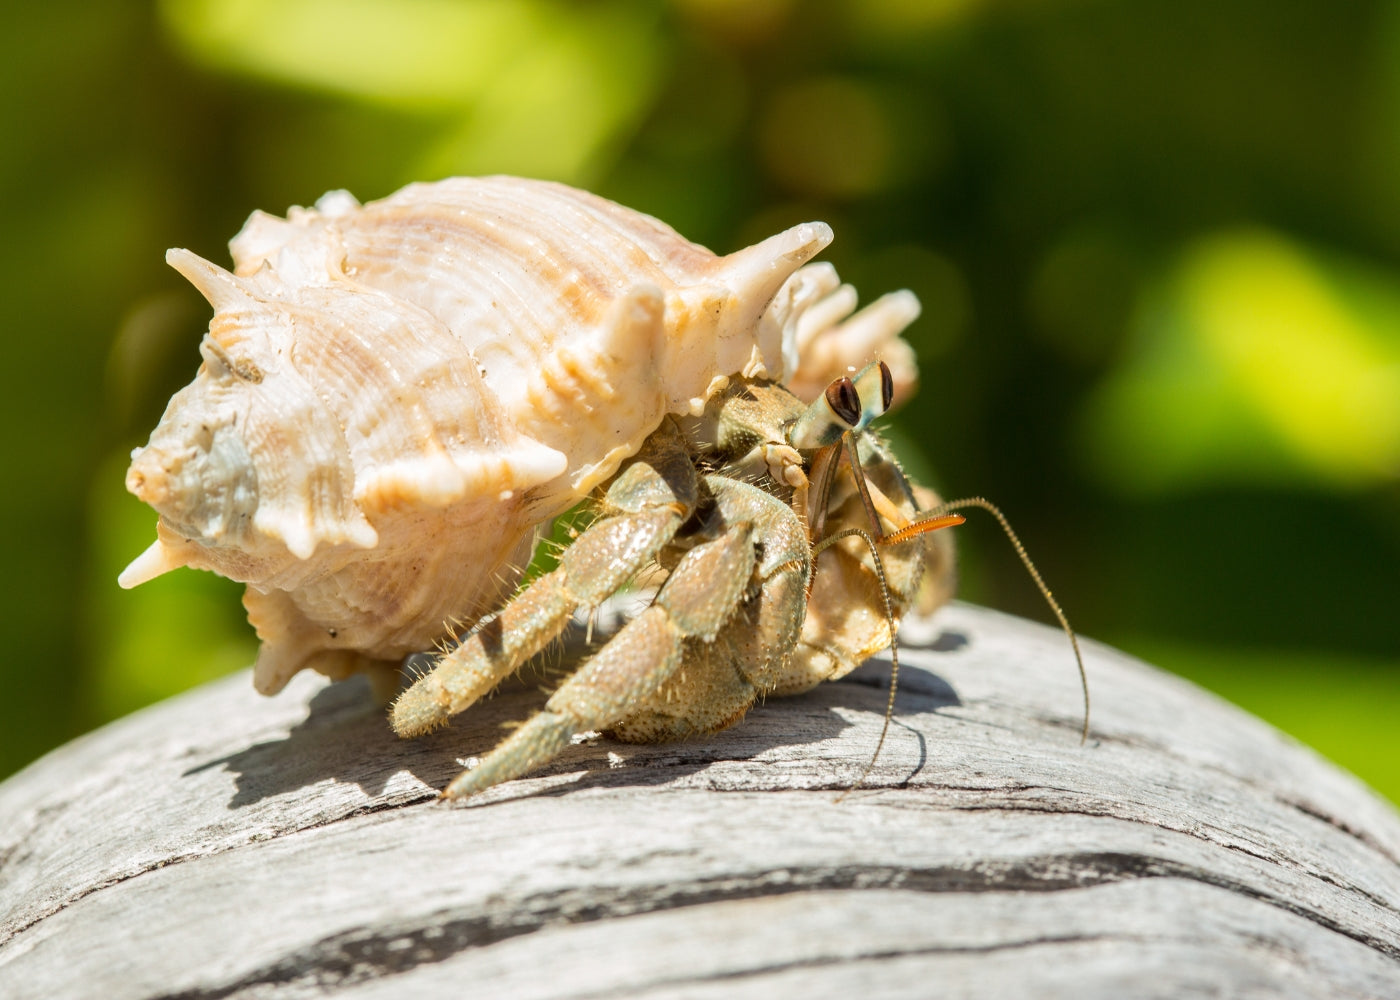 Land Hermit Crab - Medium